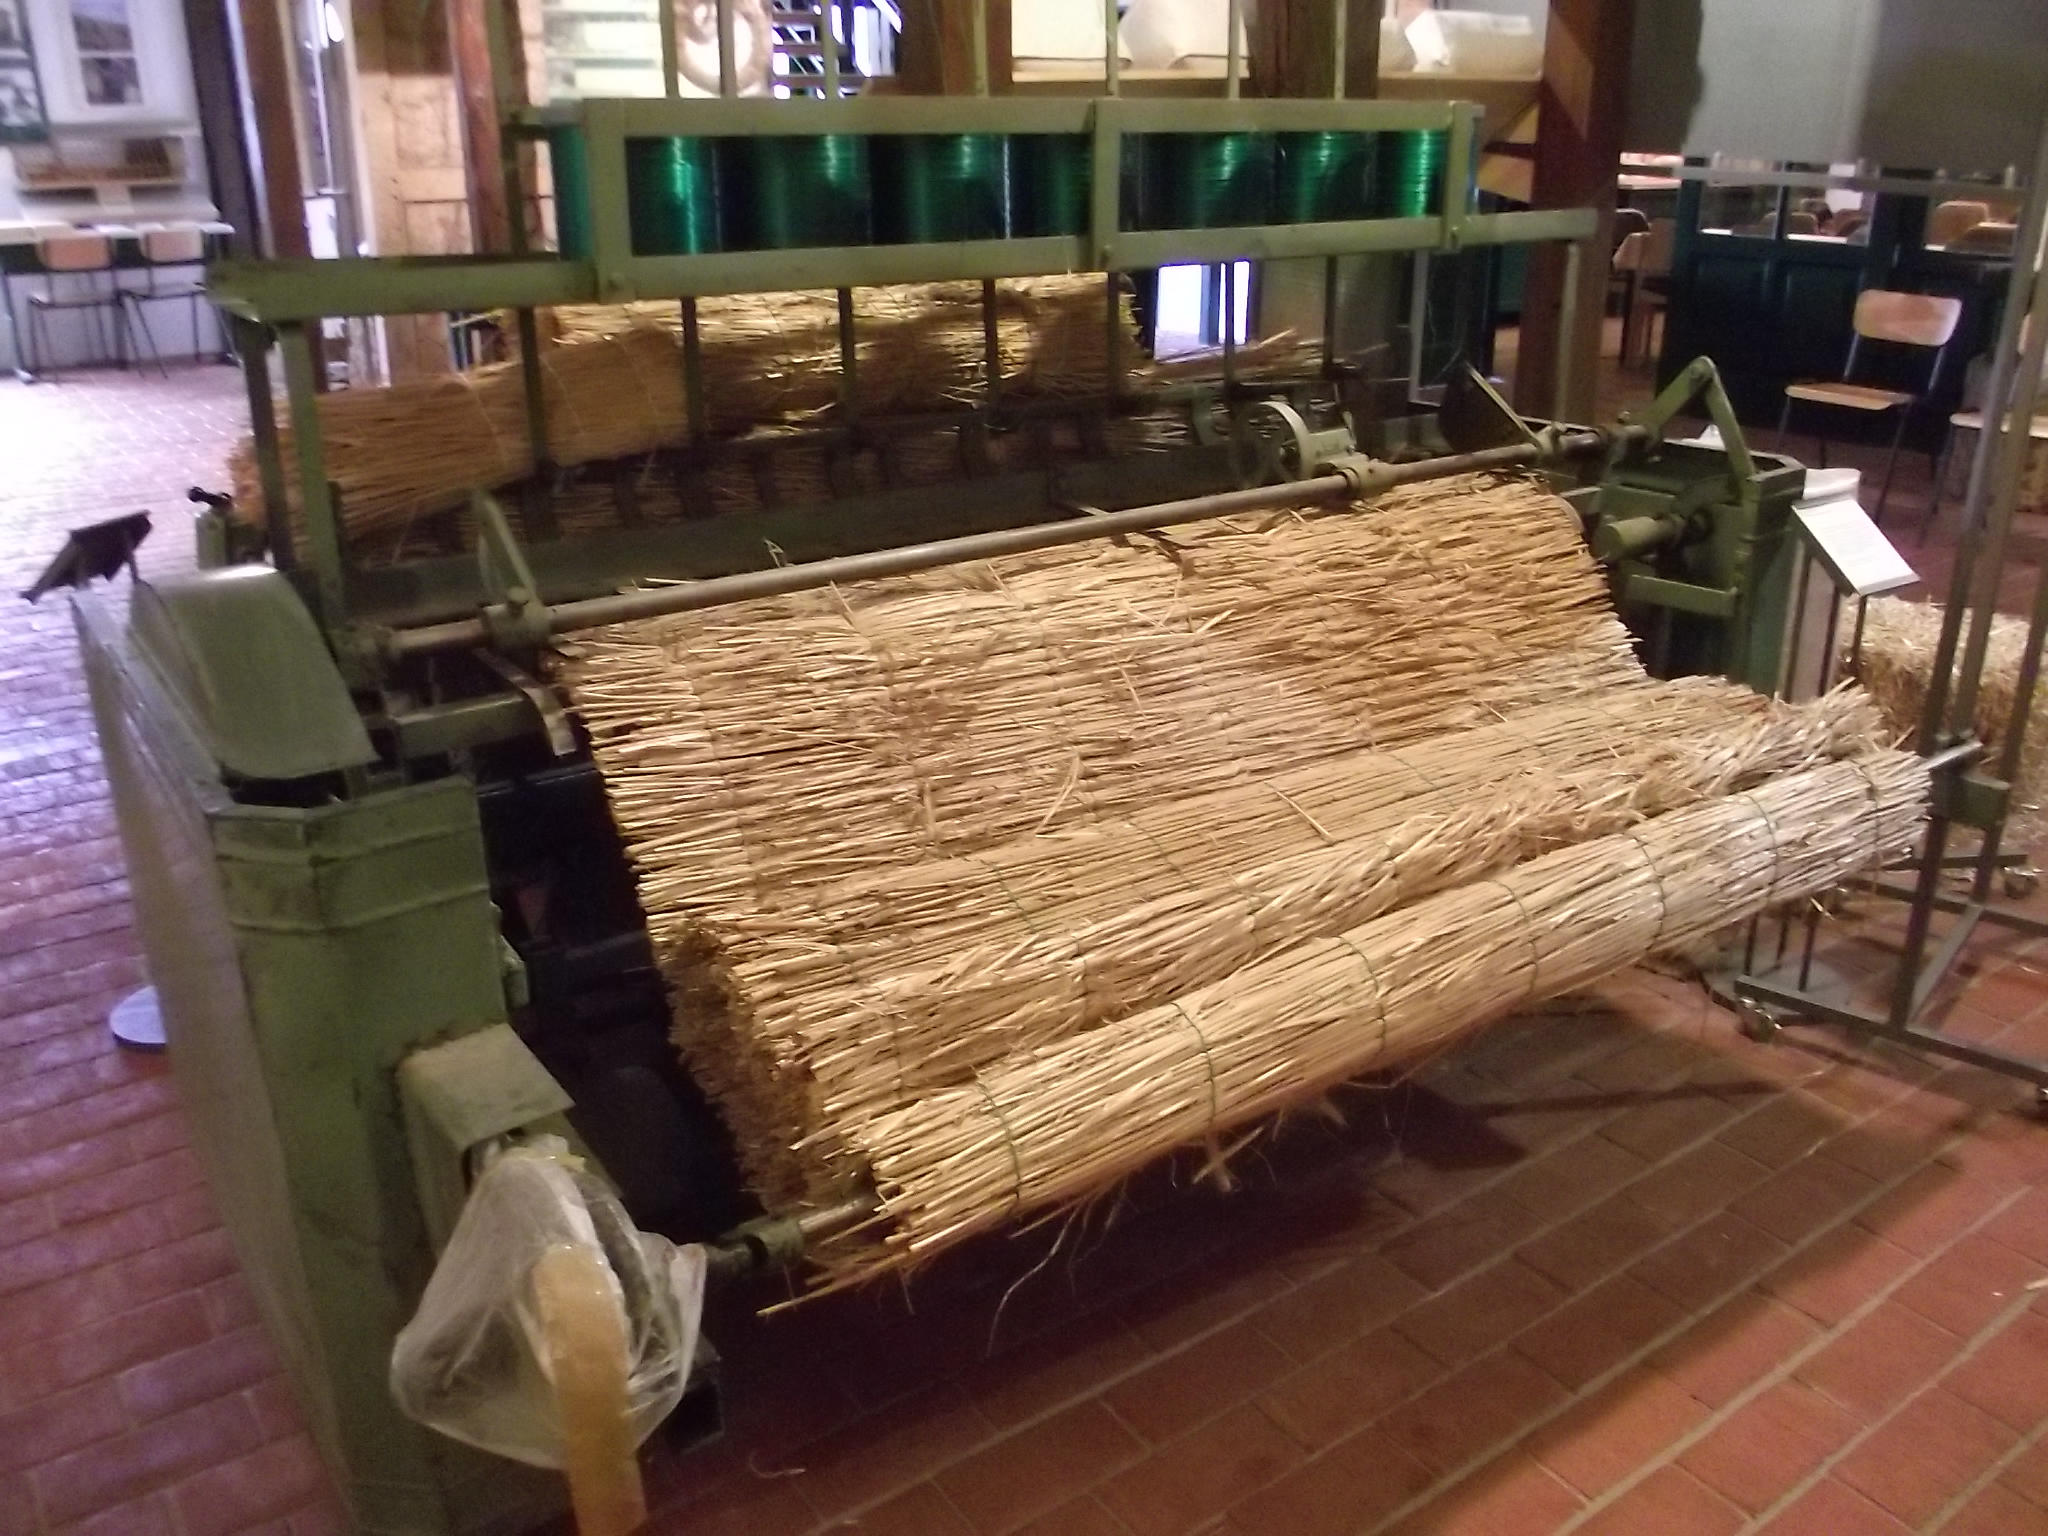 Heutige Verwendung von Strohprodukten im Museum für Strohverarbeitung Twistringen - Strohmatten